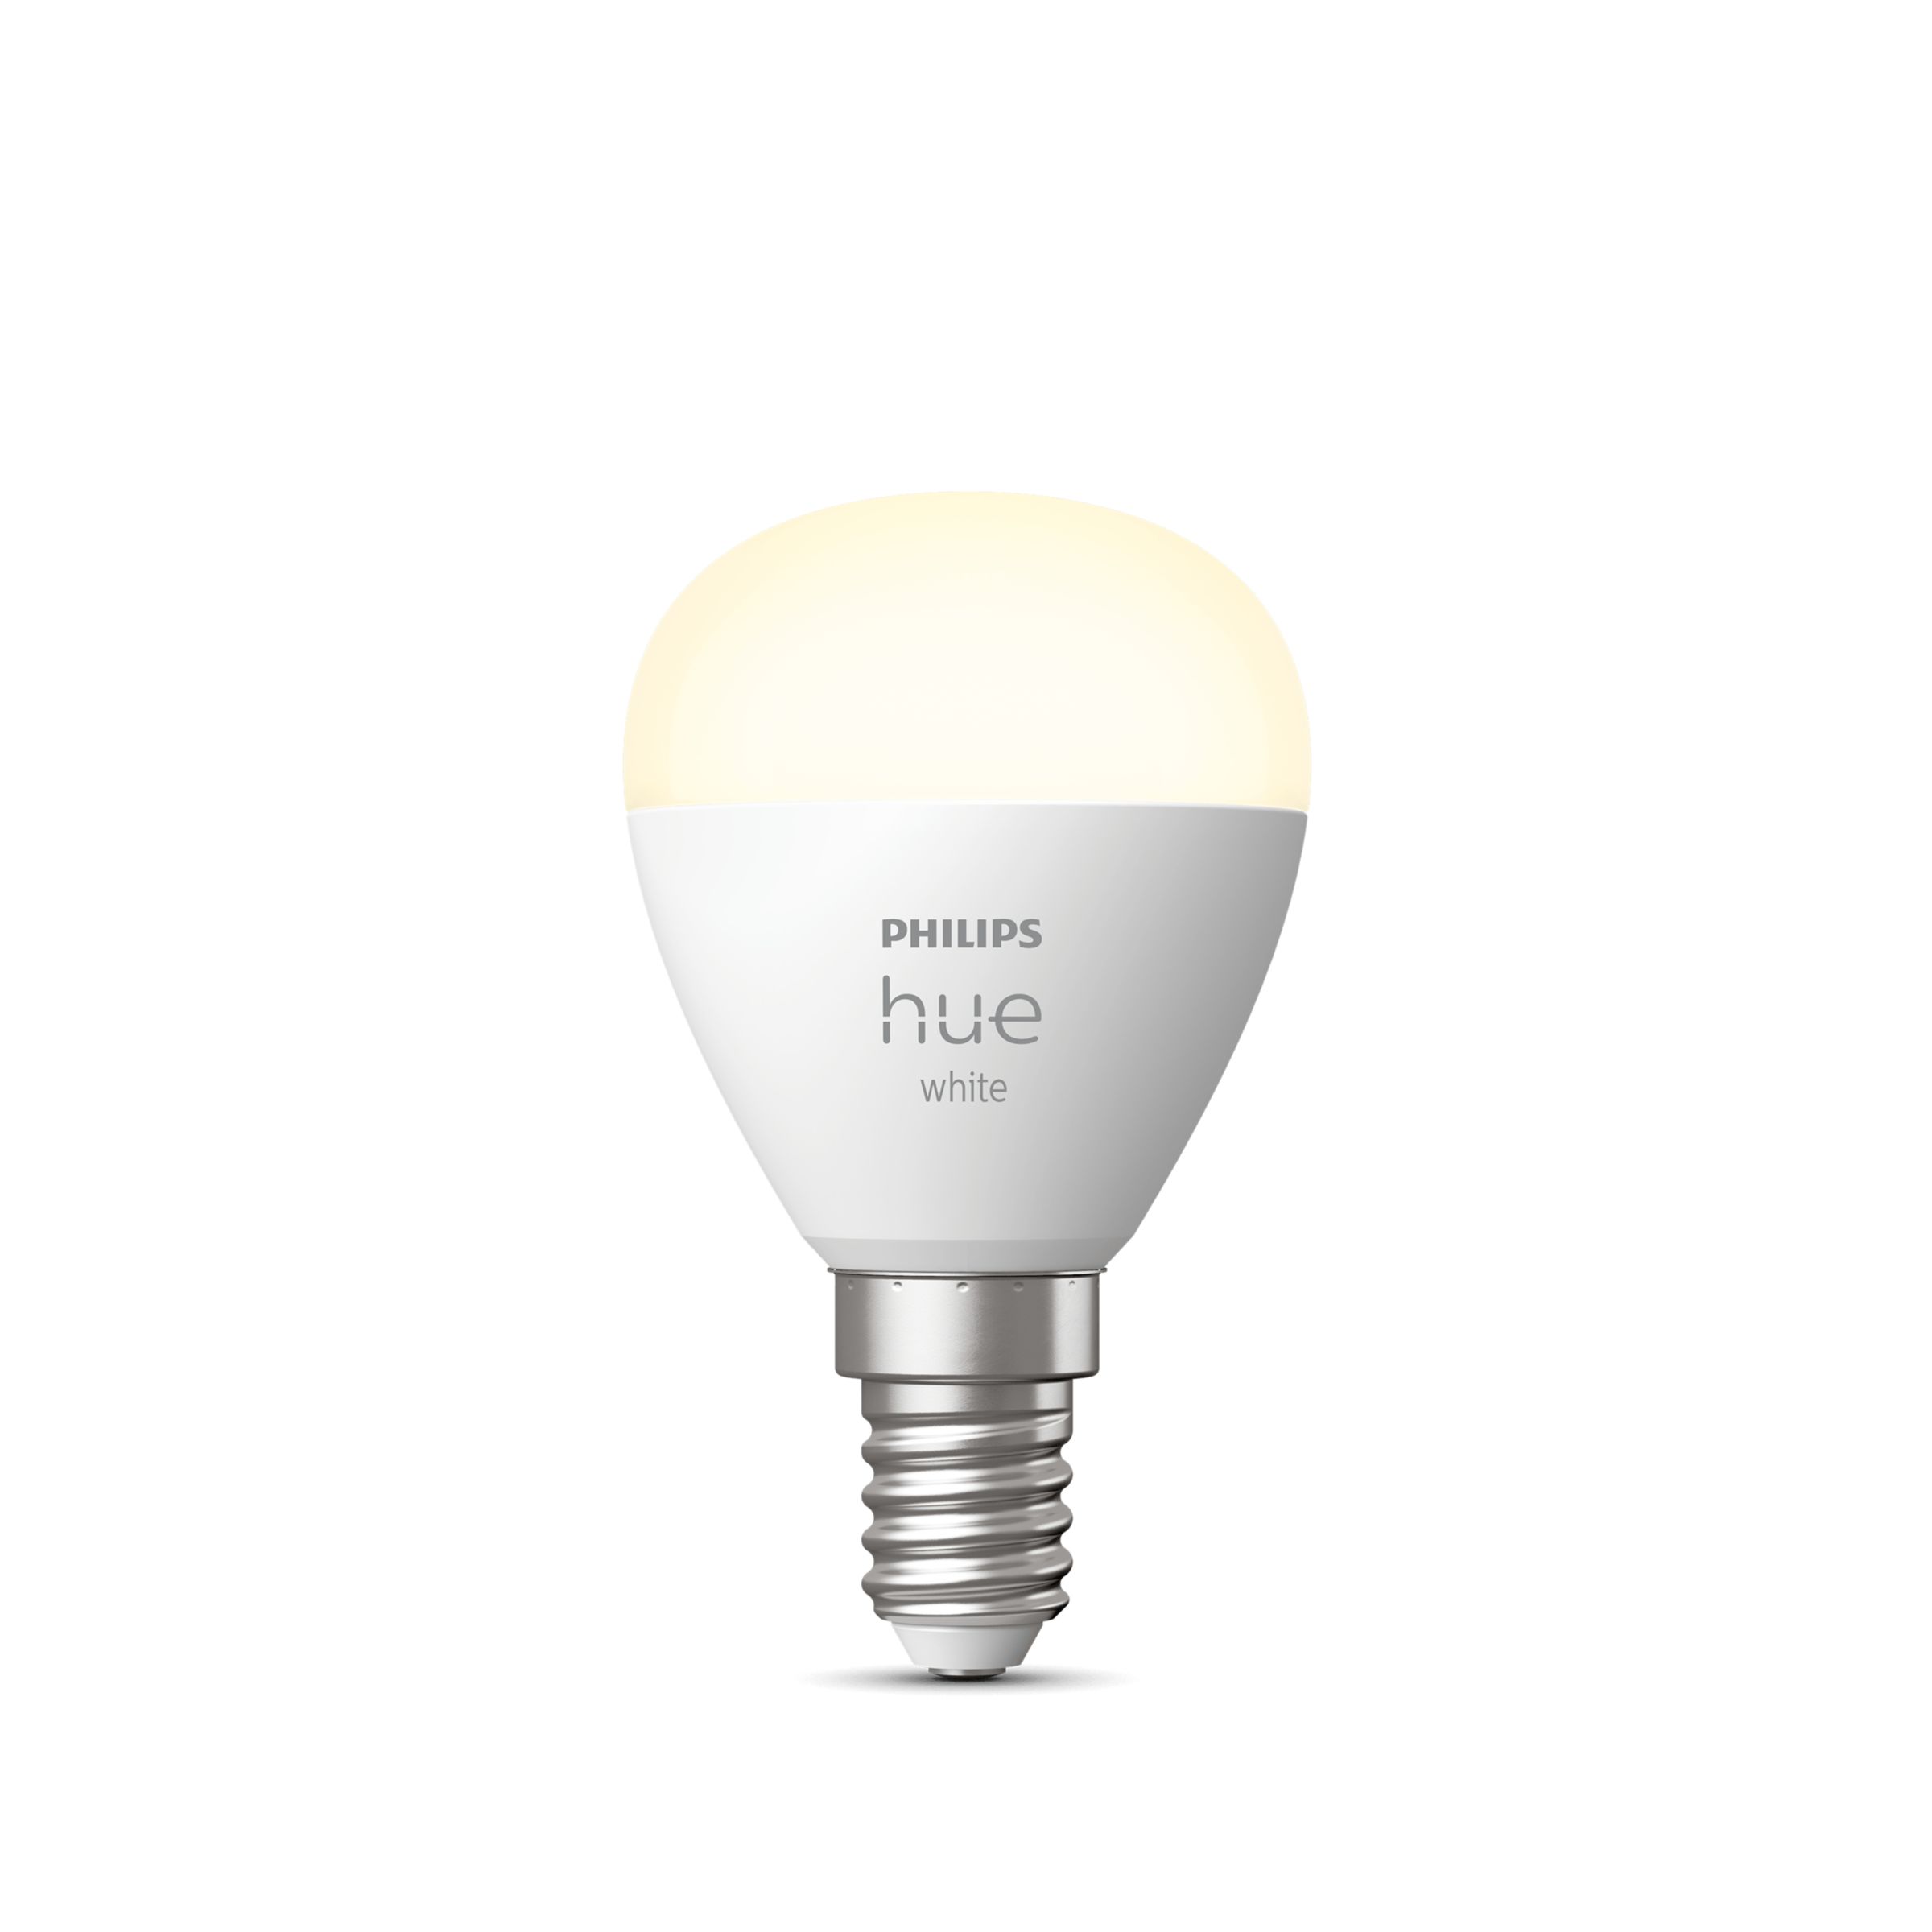 Hue White - slimme lamp | Philips NL